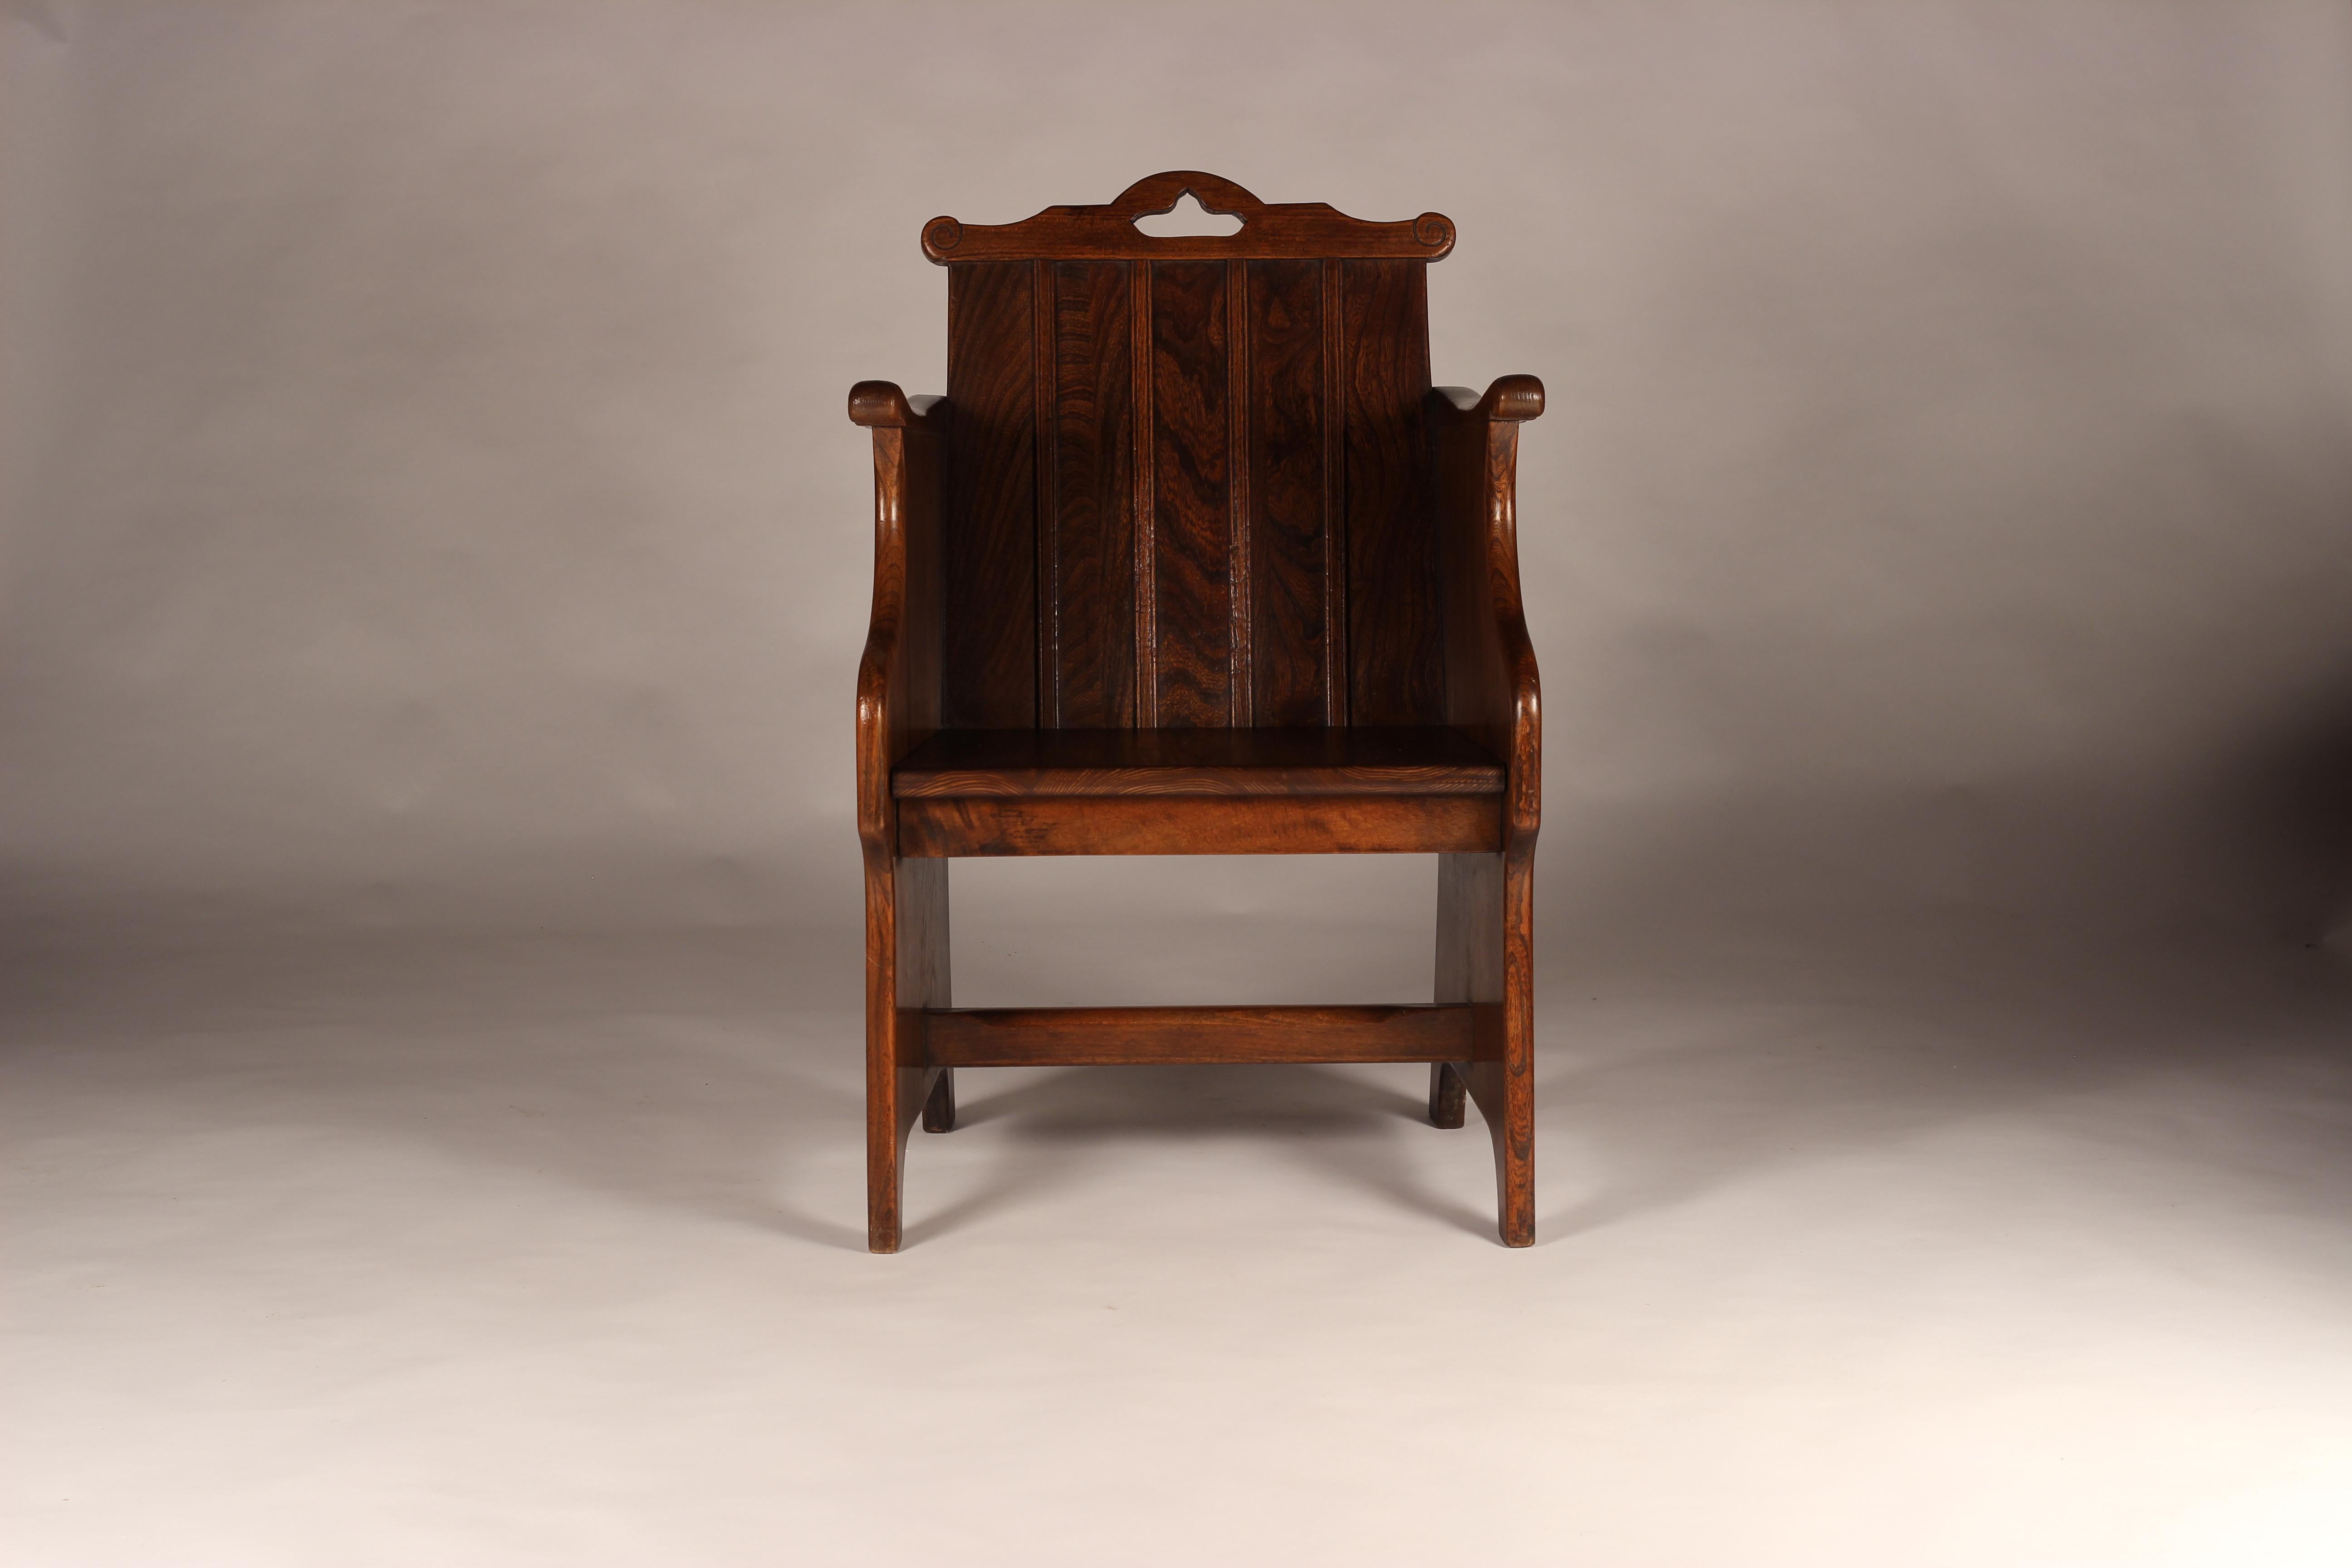 Eine Reihe von 1930's Elm Wanne Stühle von G T Harris Ltd Cabinet makers von Northampton Herstellung von hochwertigen Kunst und Handwerk Möbel in den 1920er Jahren bis 1930er Jahren

Maße: Ht 85cm x Breite 55cm x Tiefe 51cm Sitzhöhe 41,5cm